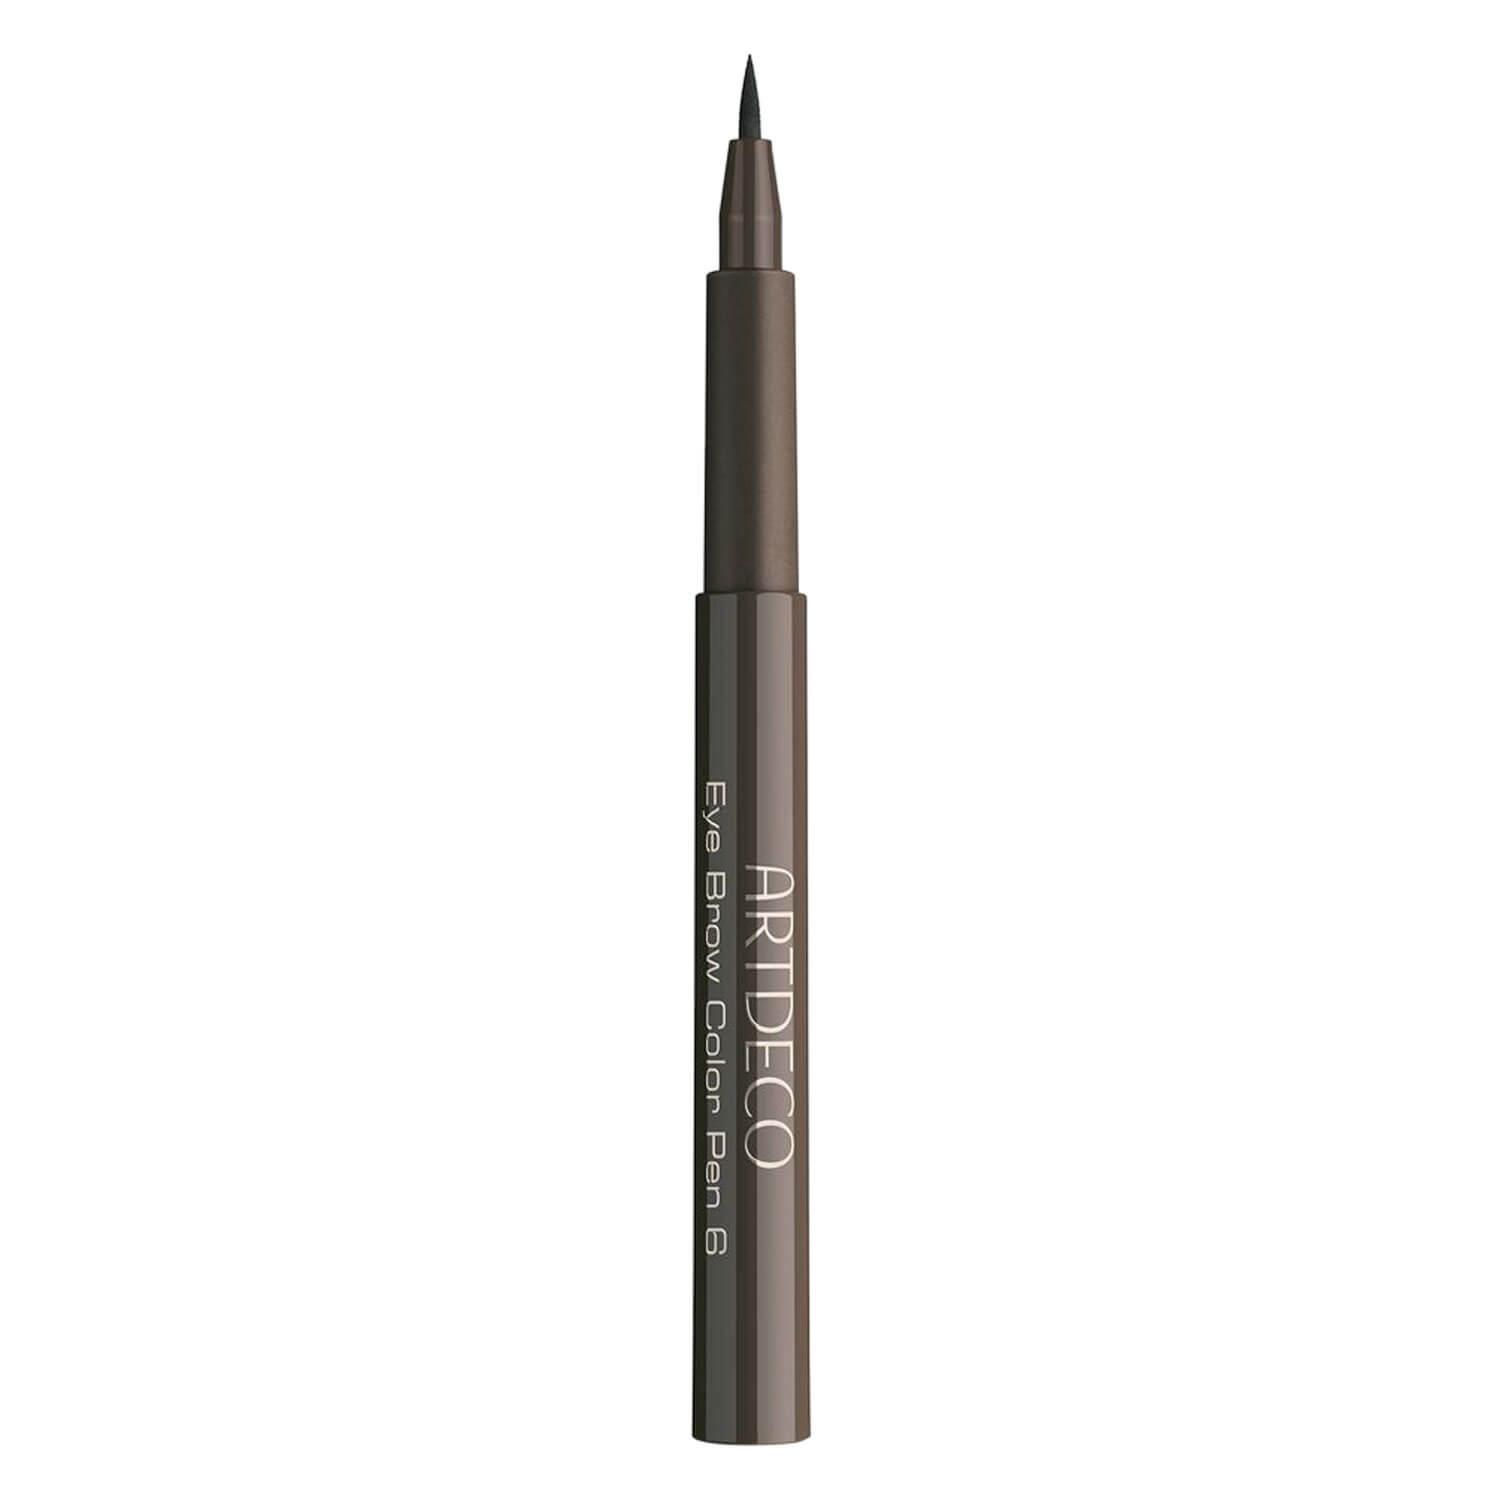 Artdeco Brows - Eye Brow Color Pen Medium Brown 6